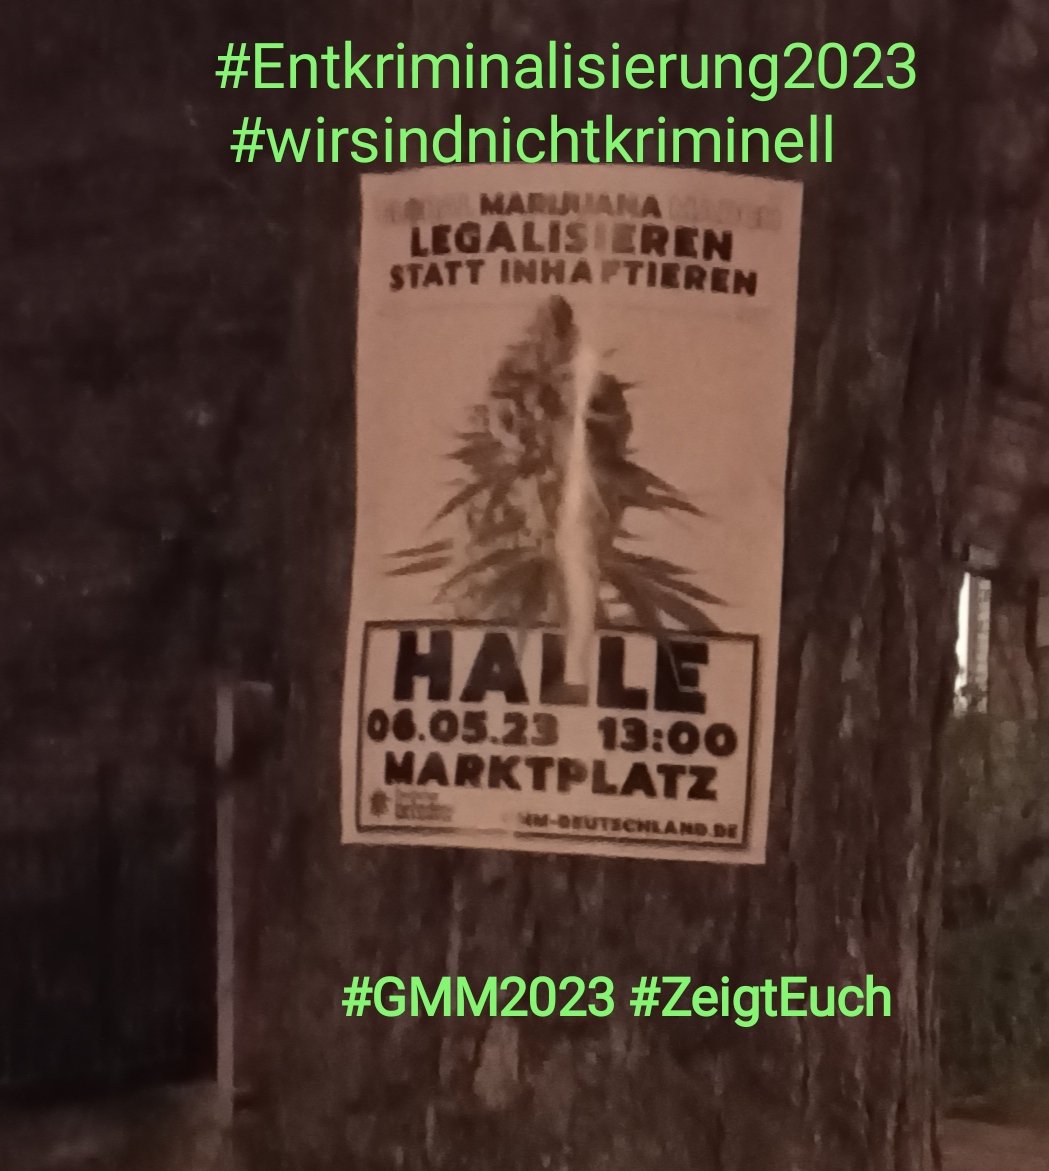 #Entkriminalisierung2023 #Wirsindnichtkriminell #EigenanbauStraffrei #Grenzwertanpassung #10ng 
#ZeigtEuch in Halle/Saale am 06.05.2023 💚